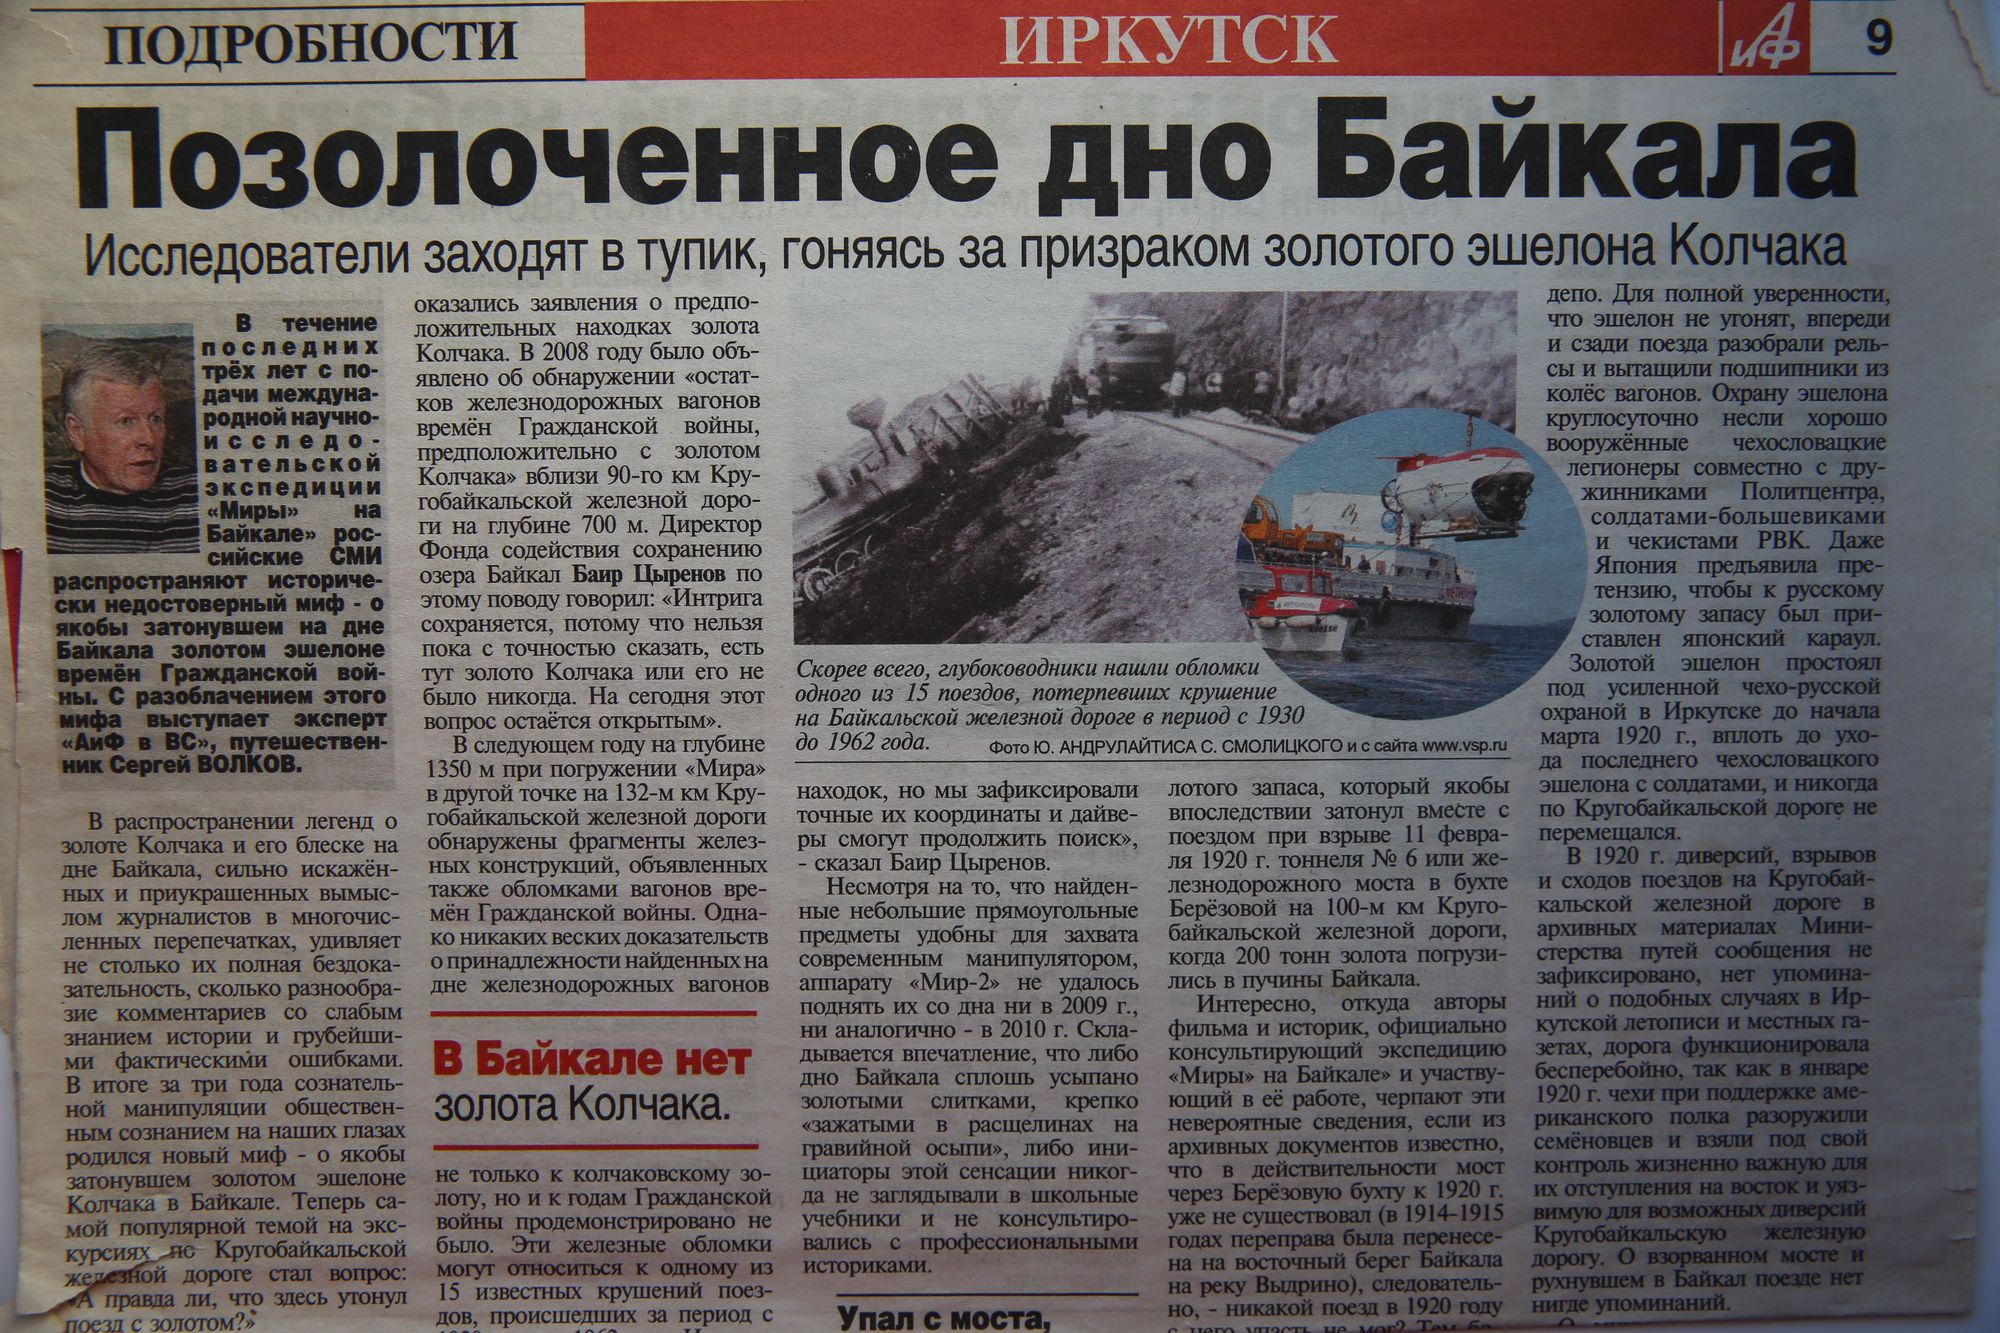 15 лет экспедиции Миры на Байкале 